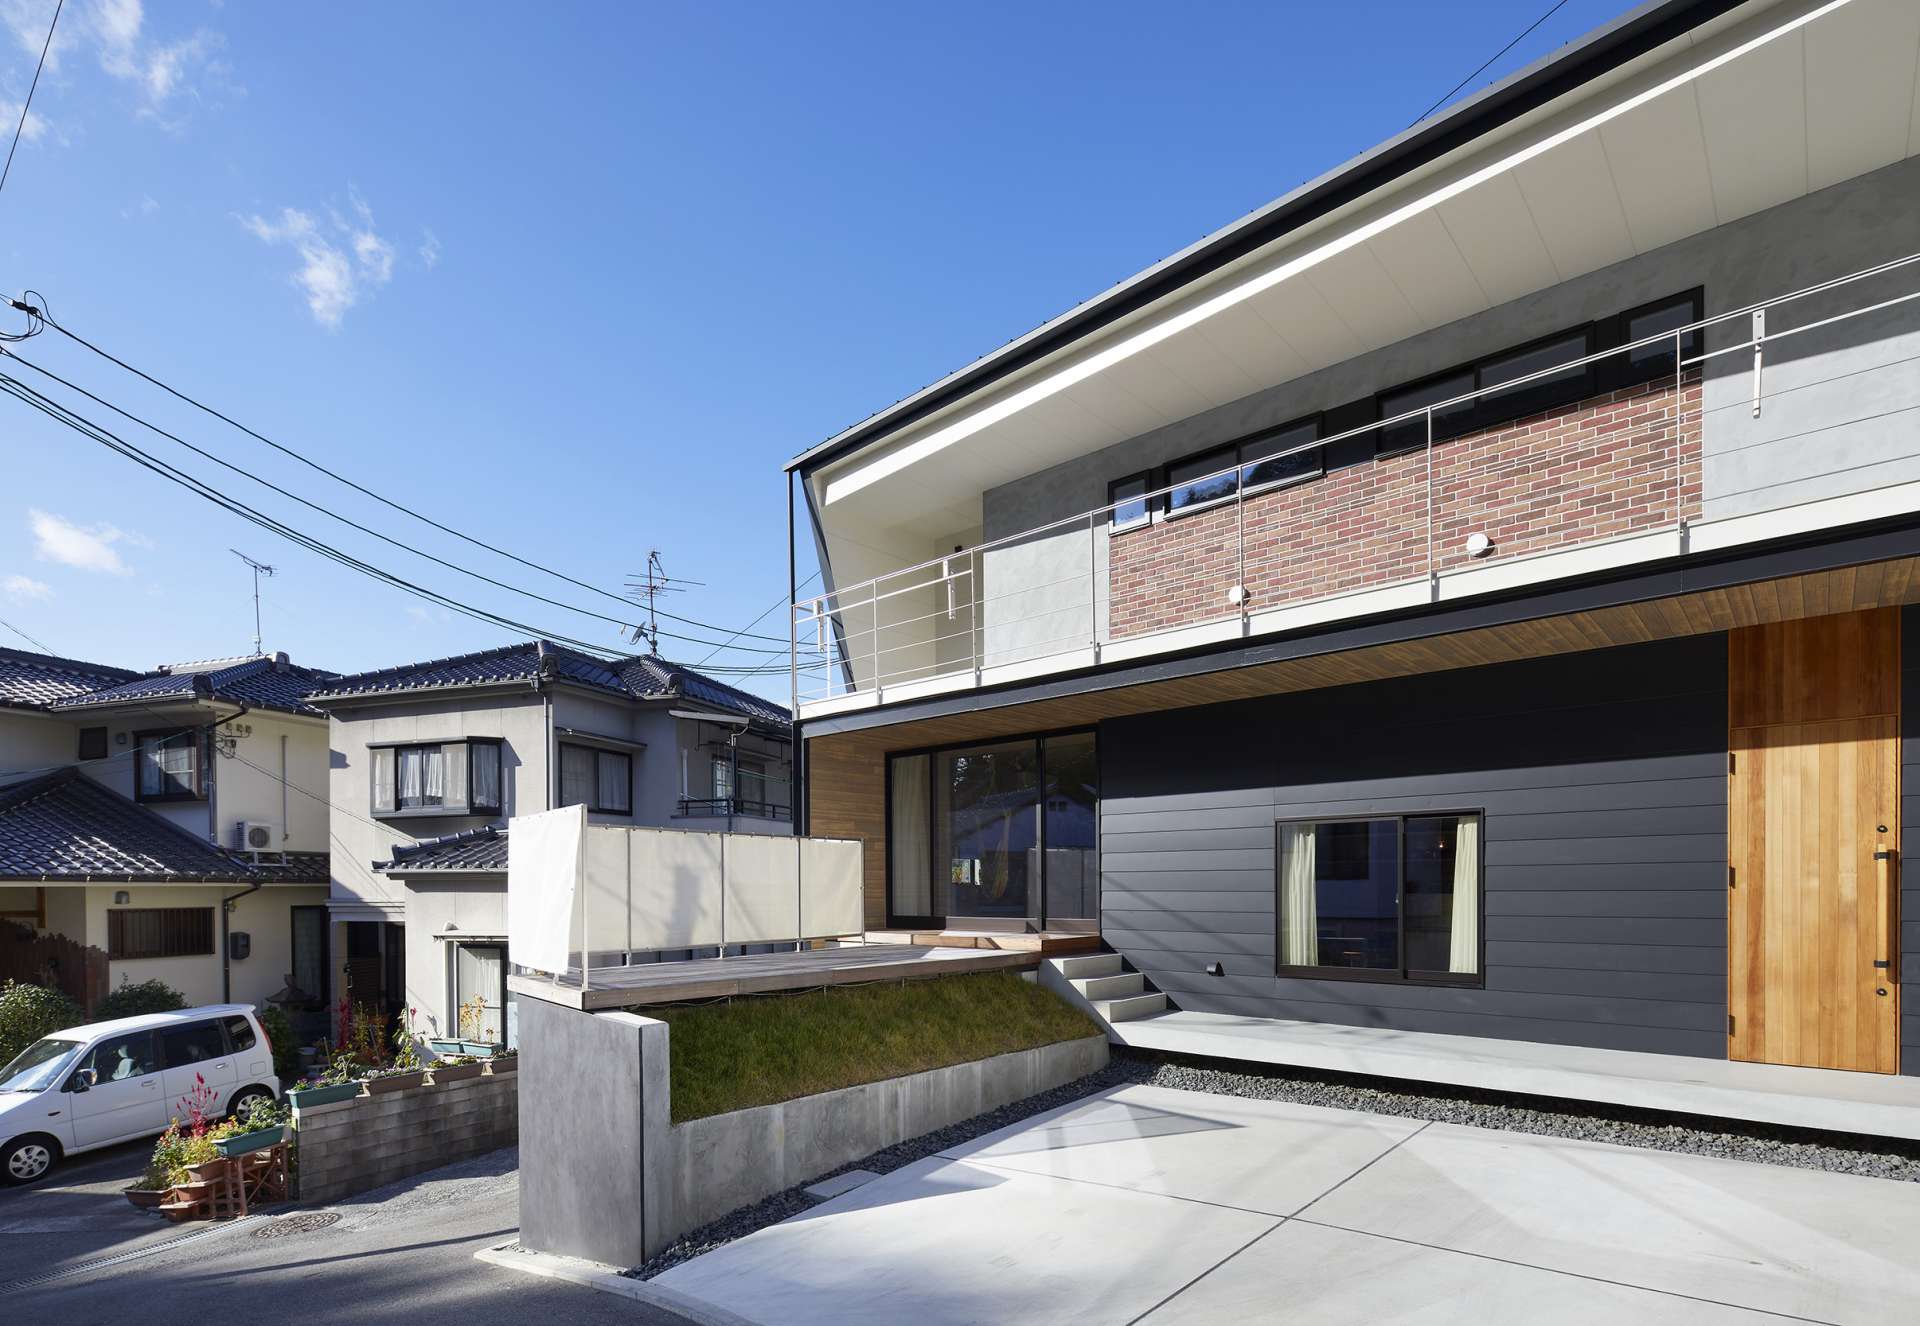 広島市でおしゃれな注文住宅、デザイン住宅の住宅設計をお考えの方は_asazu design office